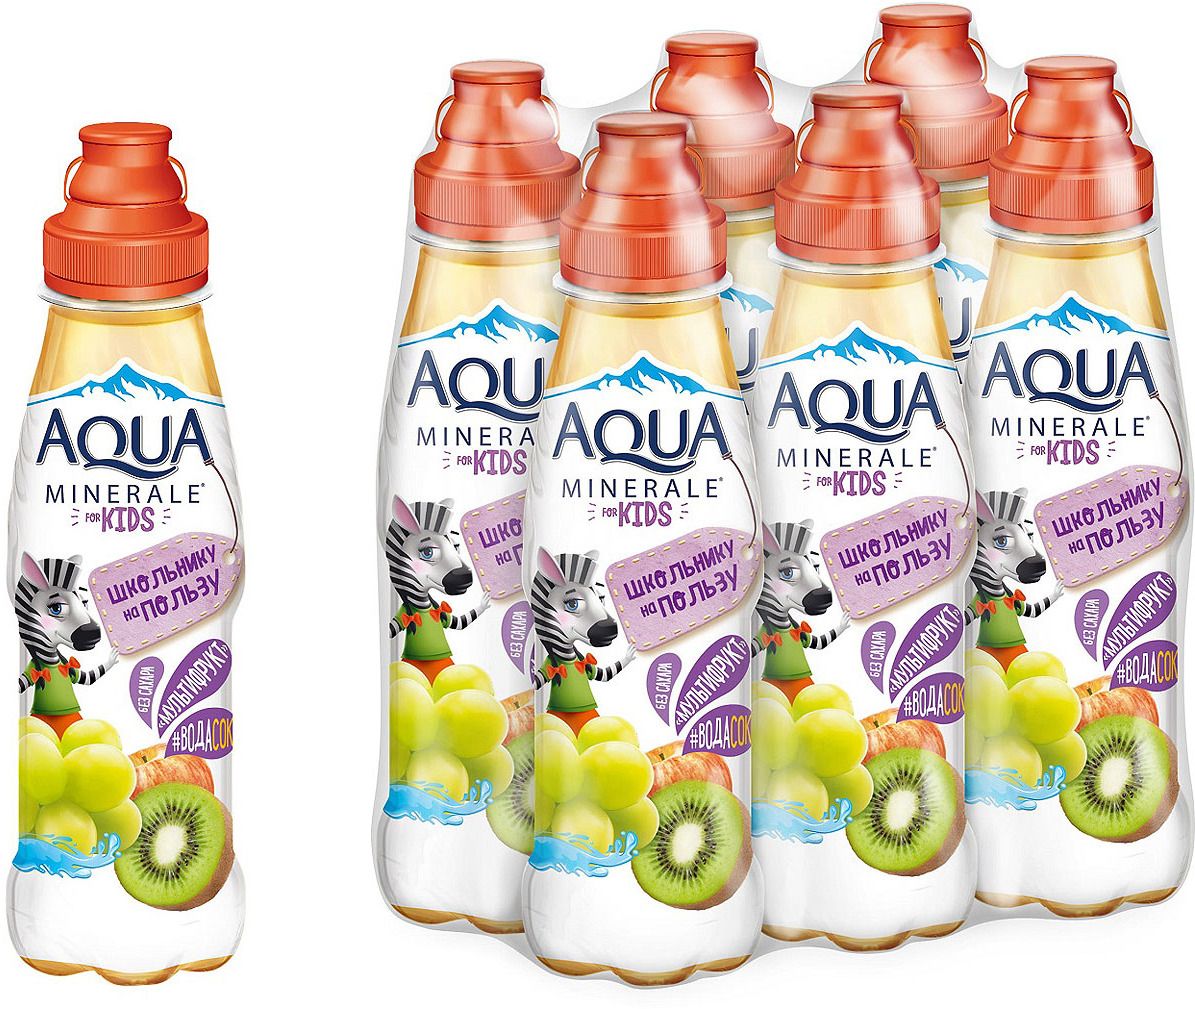   Aqua Minerale for Kids 